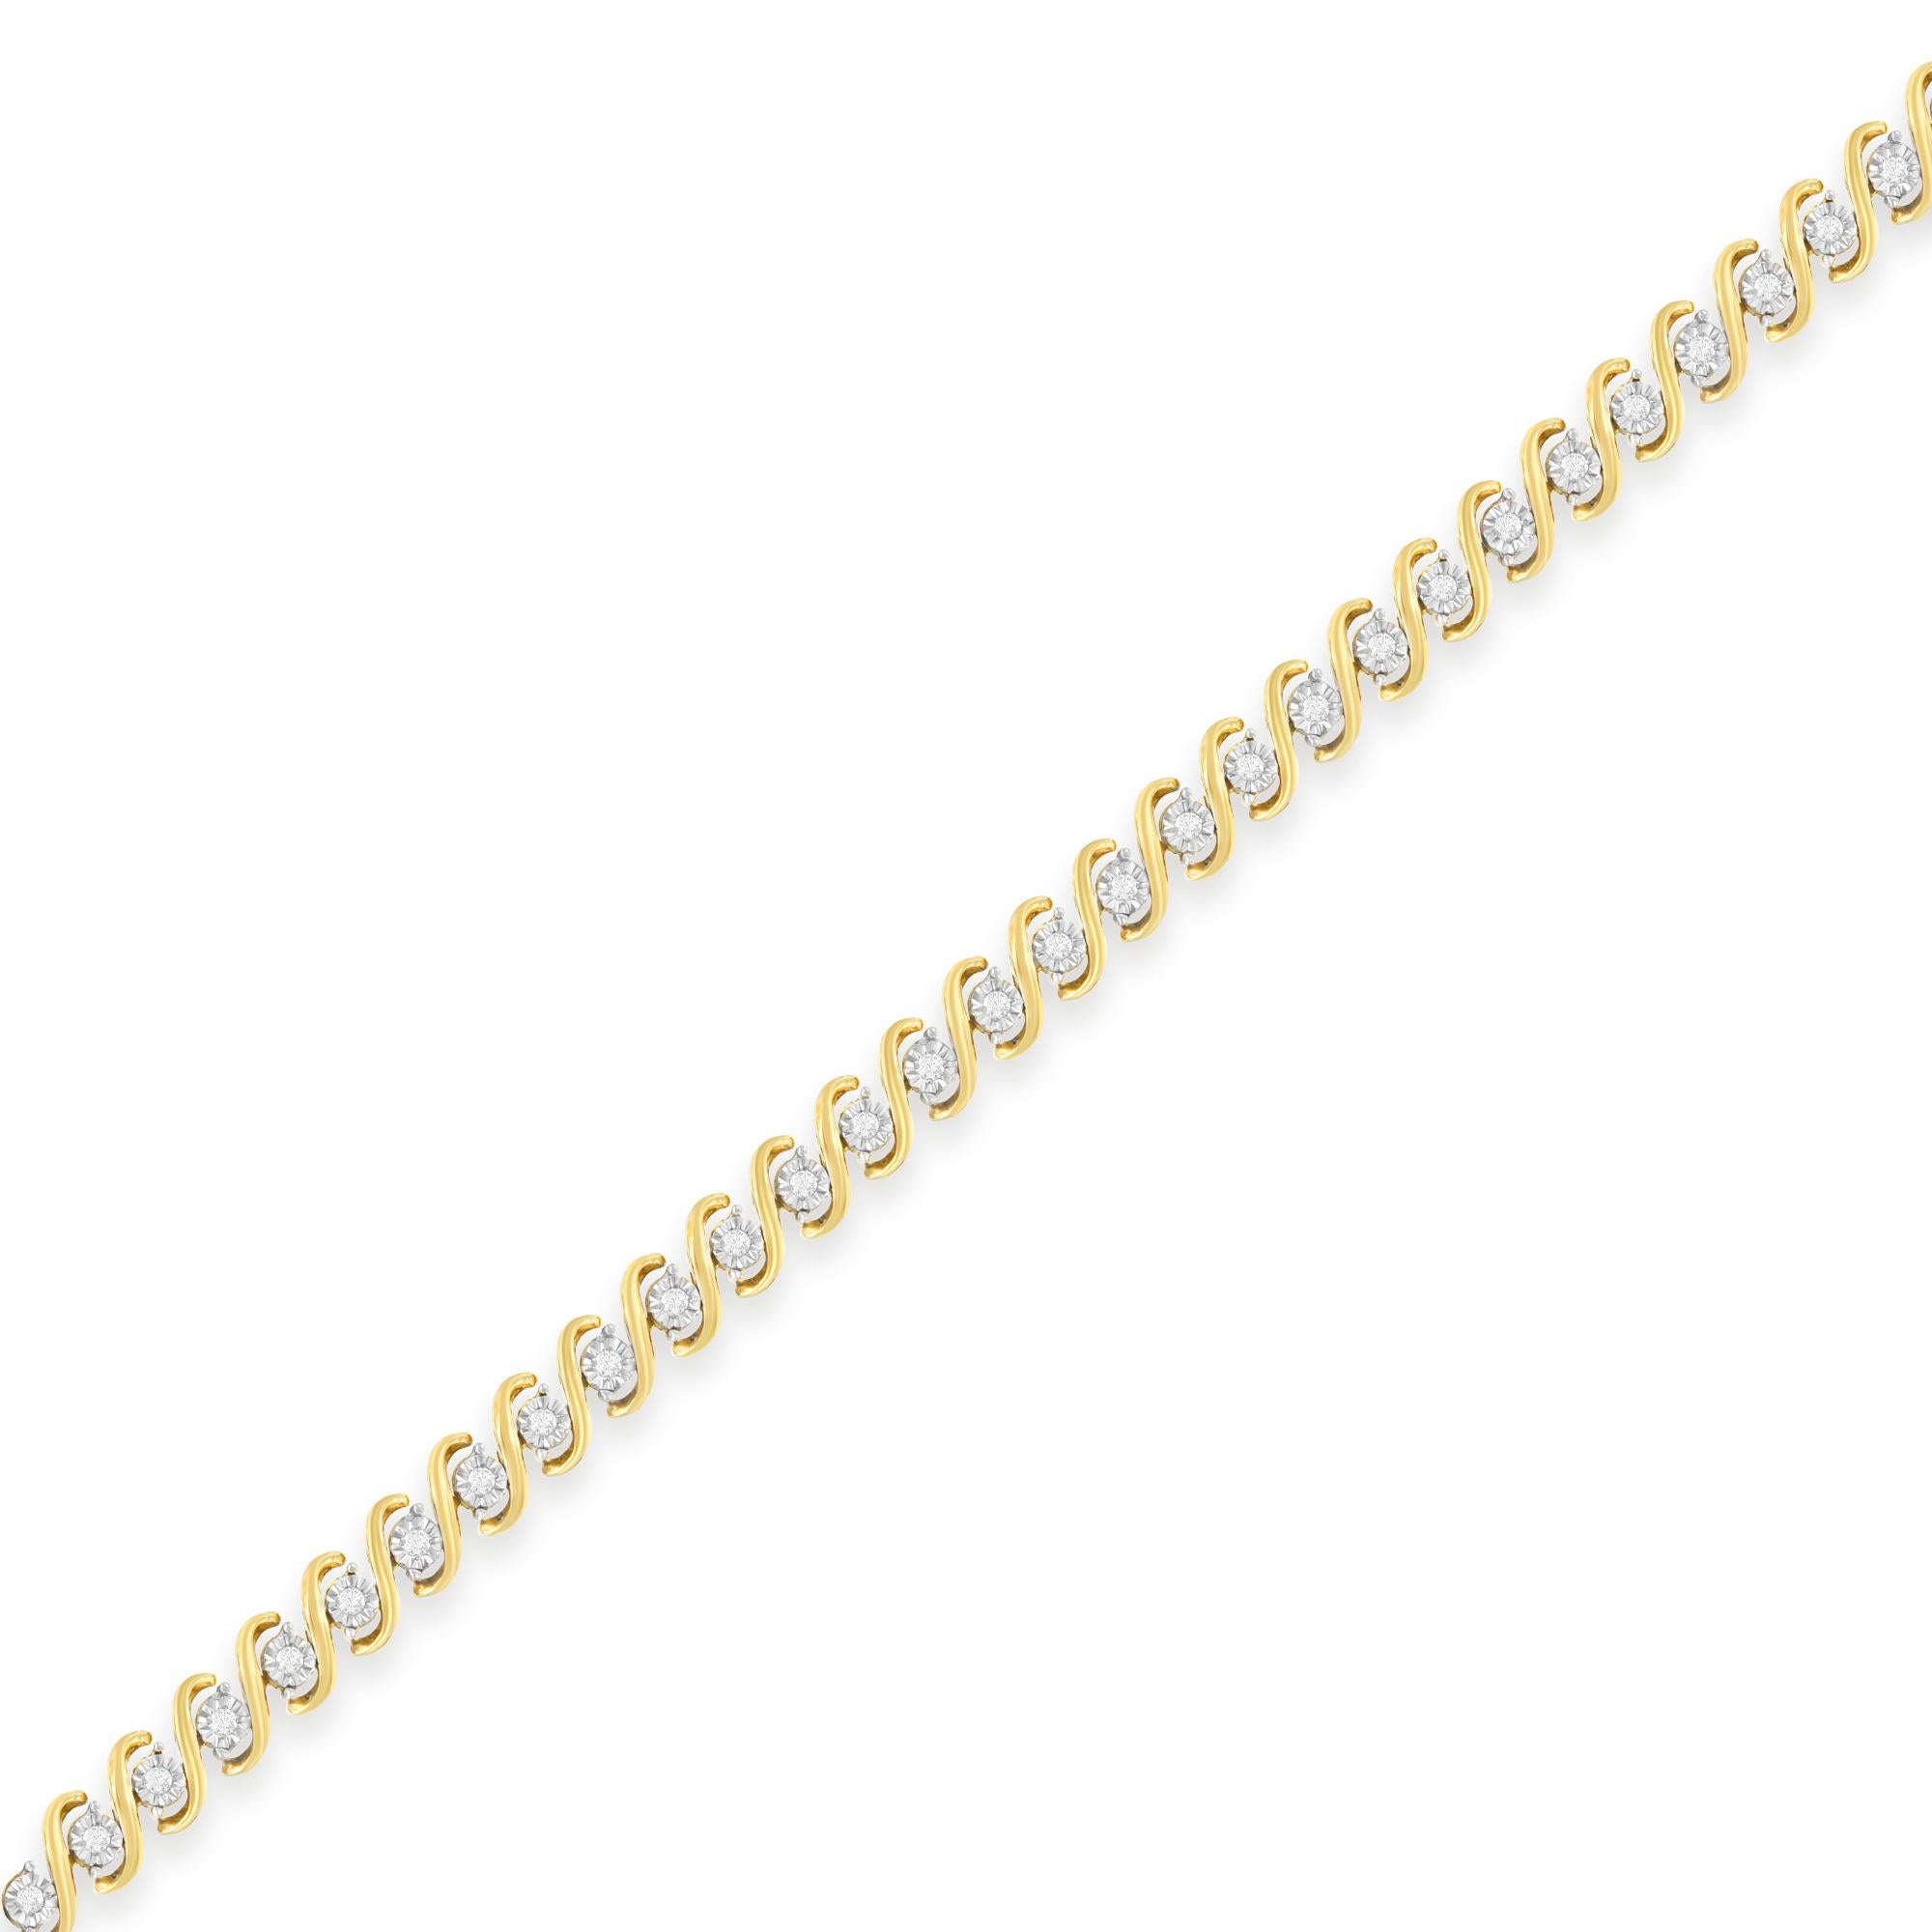 Exprimez vos sentiments avec ce magnifique bracelet de mode. Conçu avec classe, le bijou est composé d'argent sterling. Il est en outre plaqué en finition jaune pour un charme supplémentaire. Ce bracelet est élégamment orné de diamants ronds